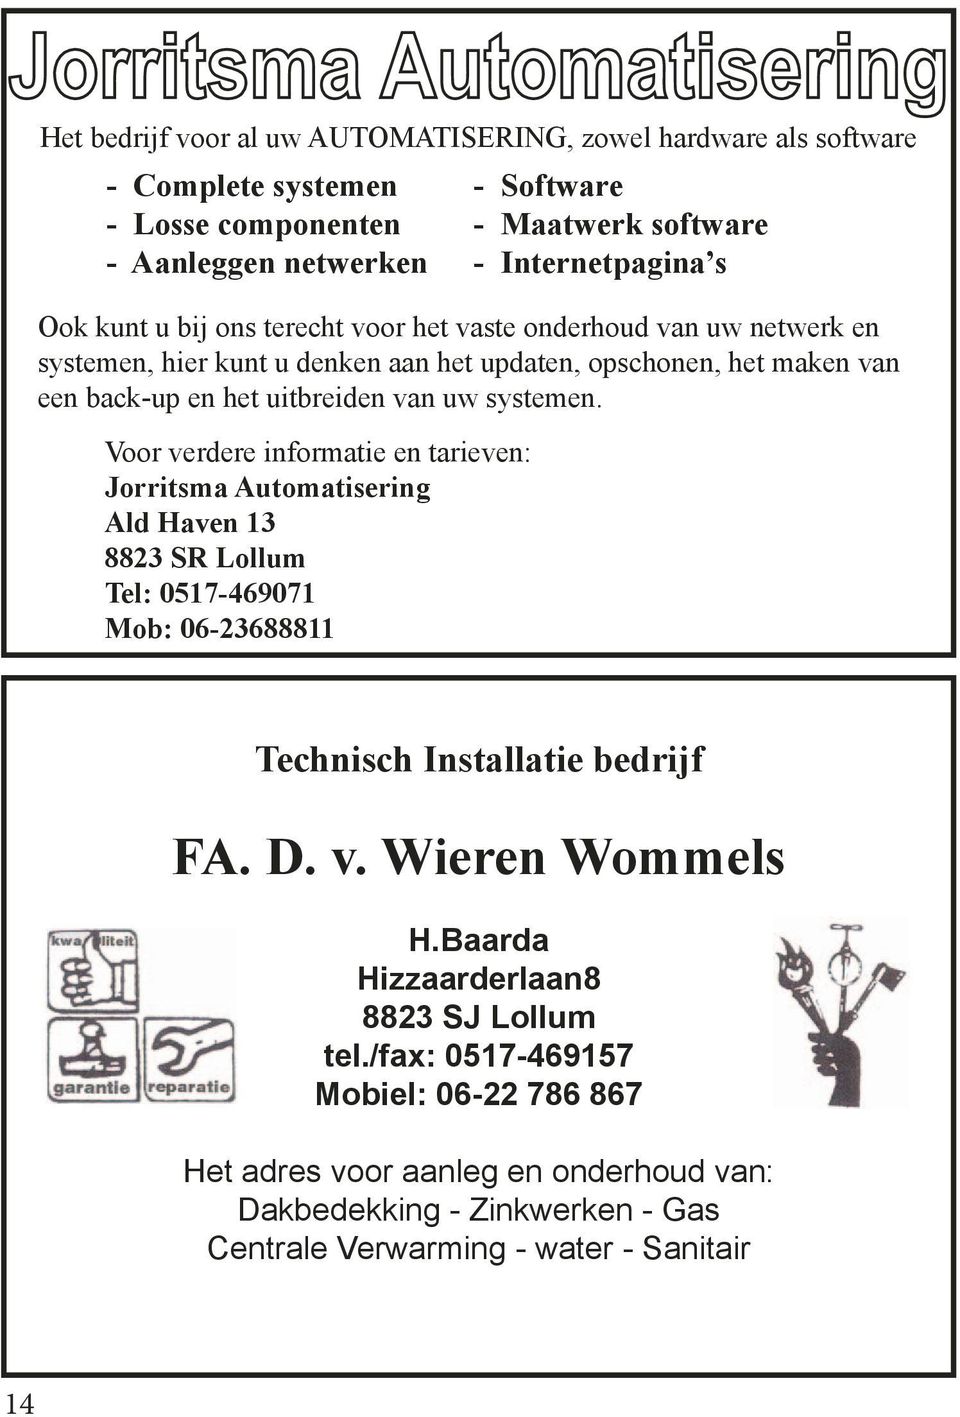 Voor verdere informatie en tarieven: Jorritsma Automatisering Ald Haven 13 8823 SR Lollum Tel: 0517-469071 Mob: 06-23688811 Technisch Installatie bedrijf FA. D. v. Wieren Wommels H.